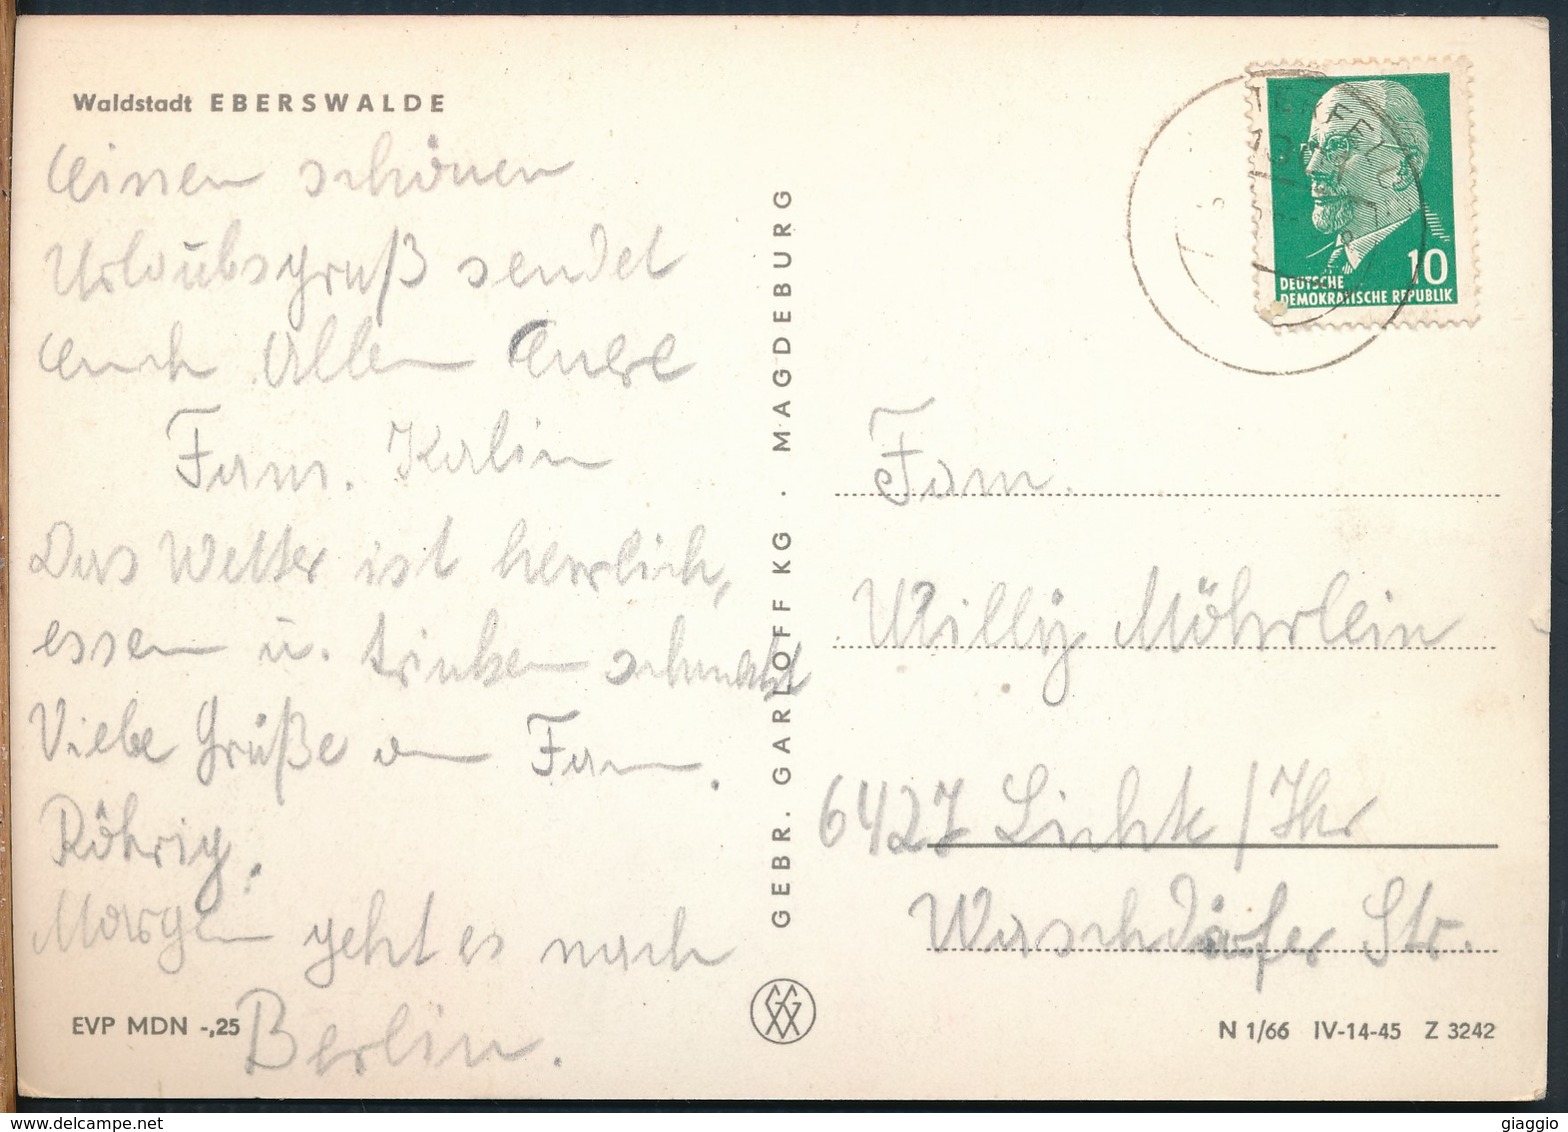 °°° 17286 - GERMANY -  WALDSTADT EBERSWALDE - 1963 With Stamps °°° - Eberswalde